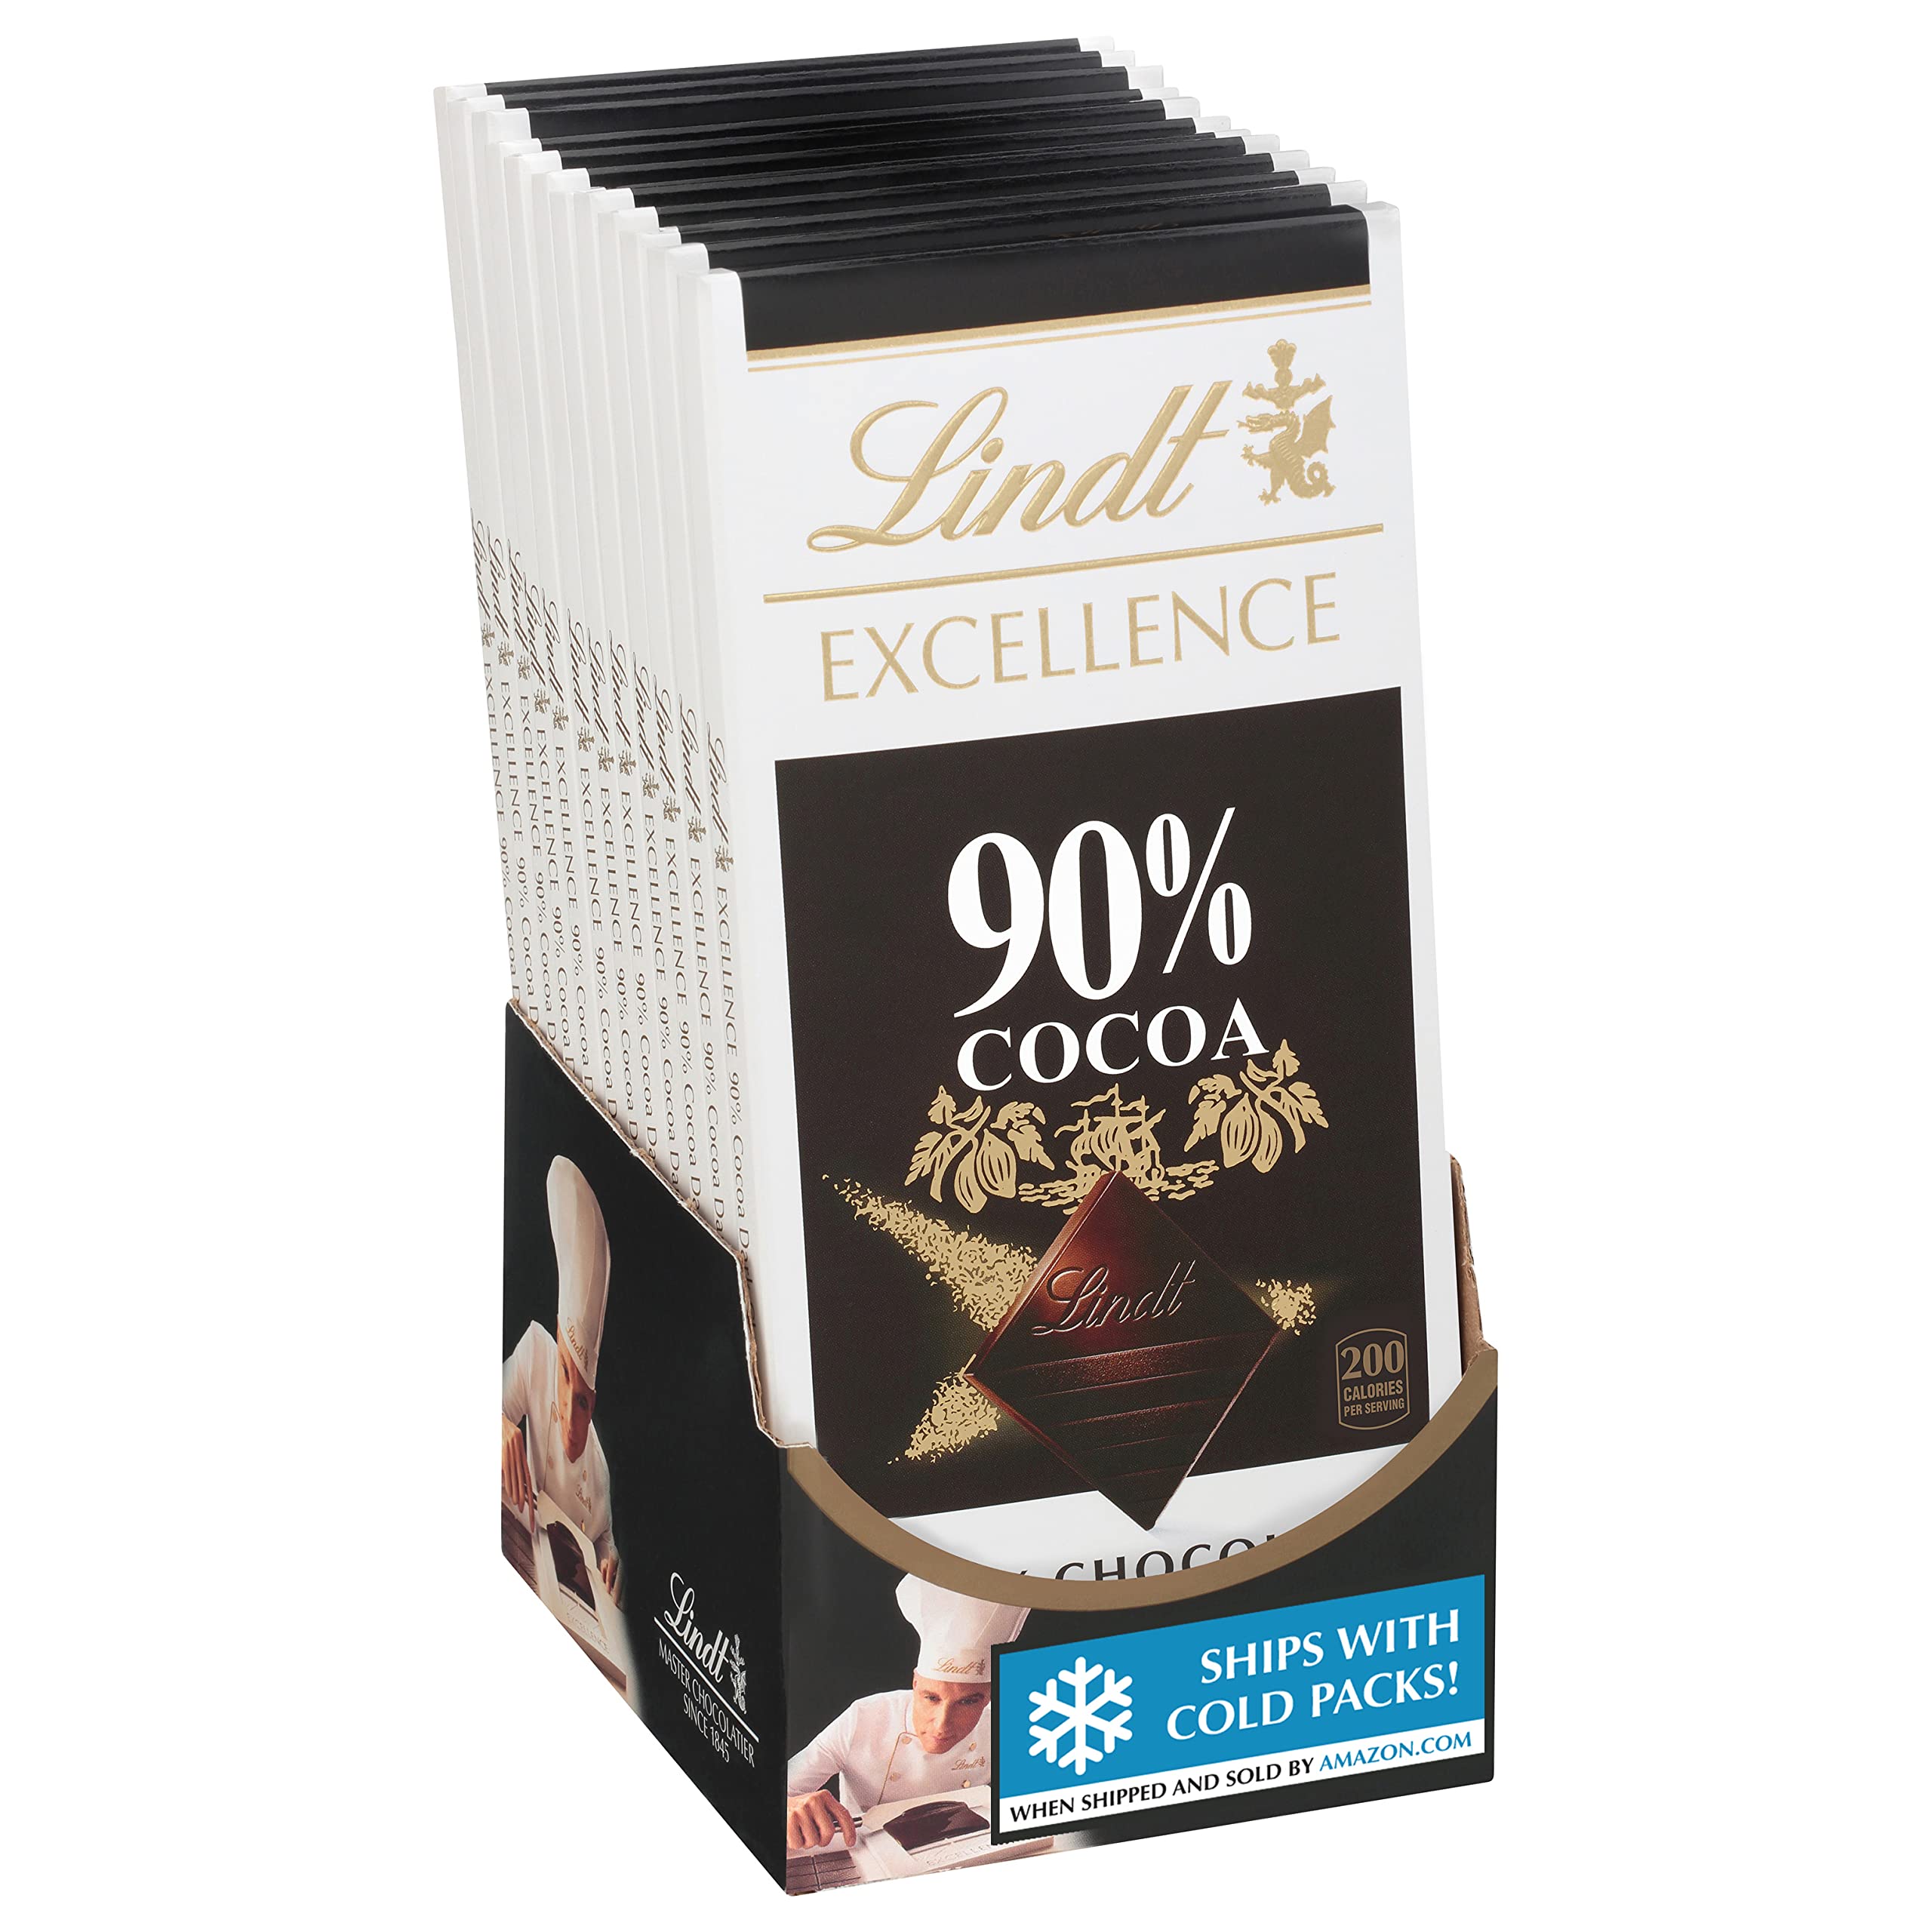 90% Cocoa Dark Chocolate EXCELLENCE Bar (3.5 oz)